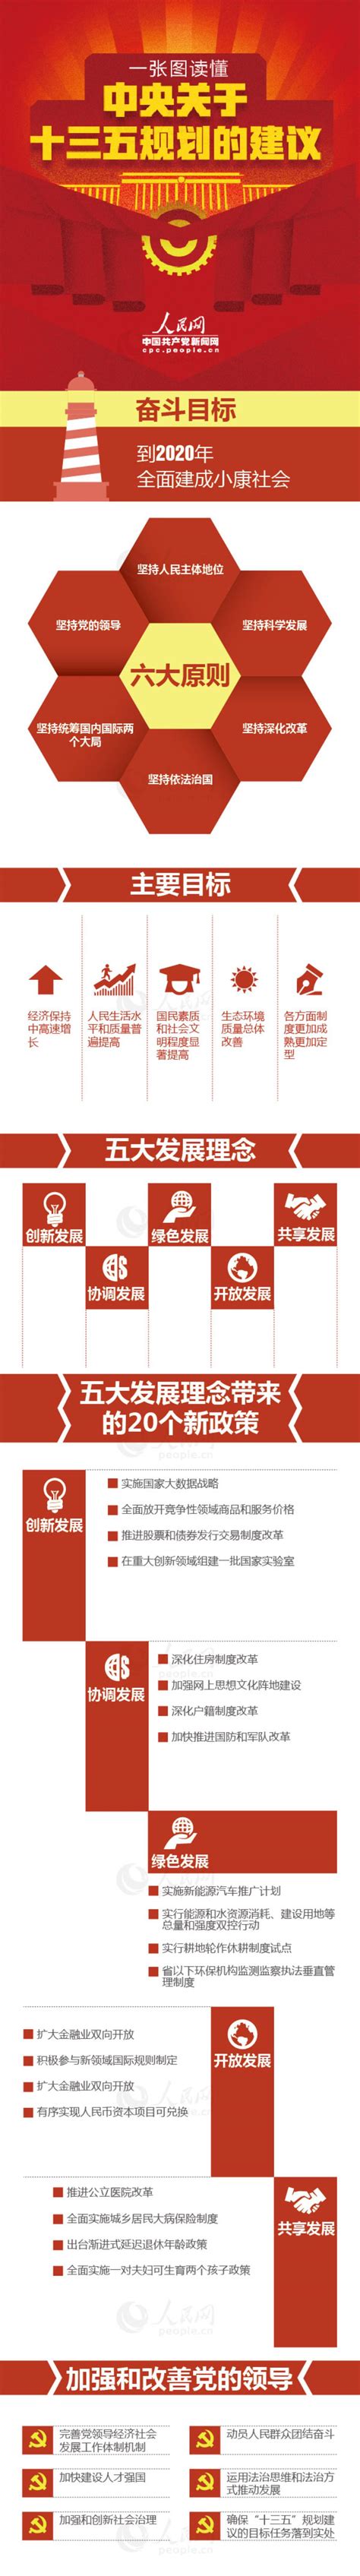 一张图读懂中央关于十三五规划的建议--北京文联网